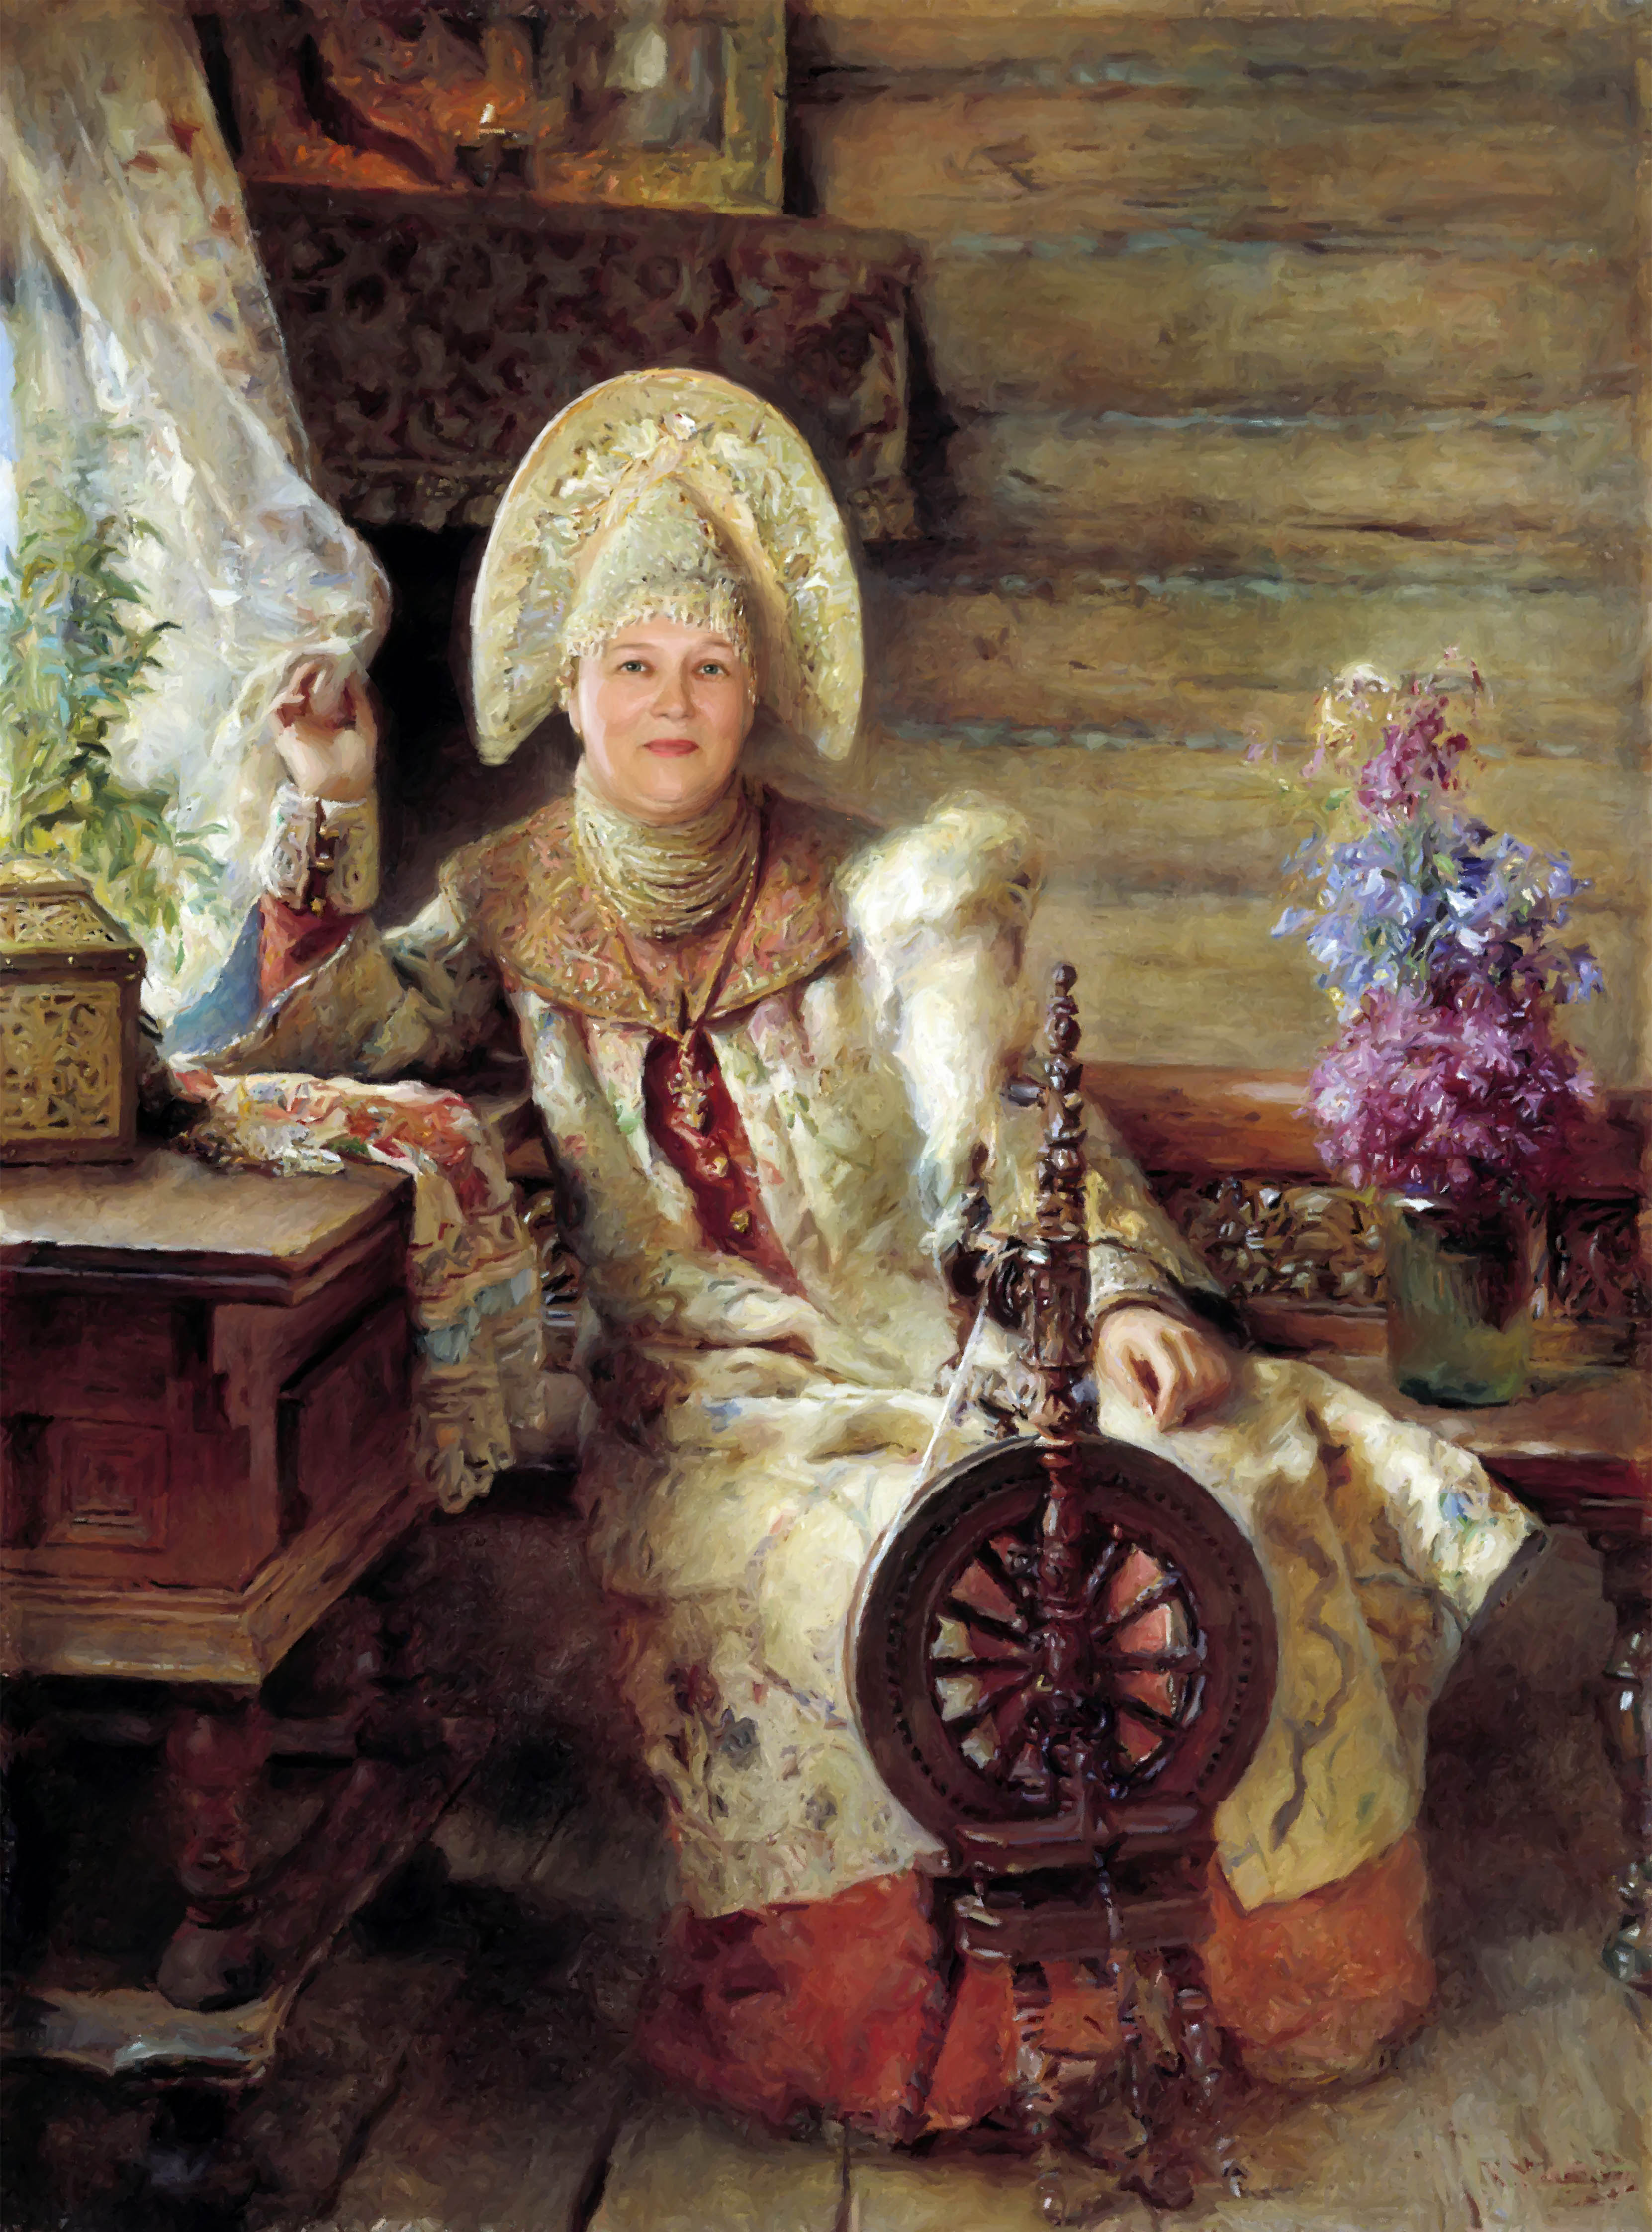 Цифровая репродукция этой картины находится в коллекции интернет-галереи Gallerix.ru ( http://gallerix.ru )